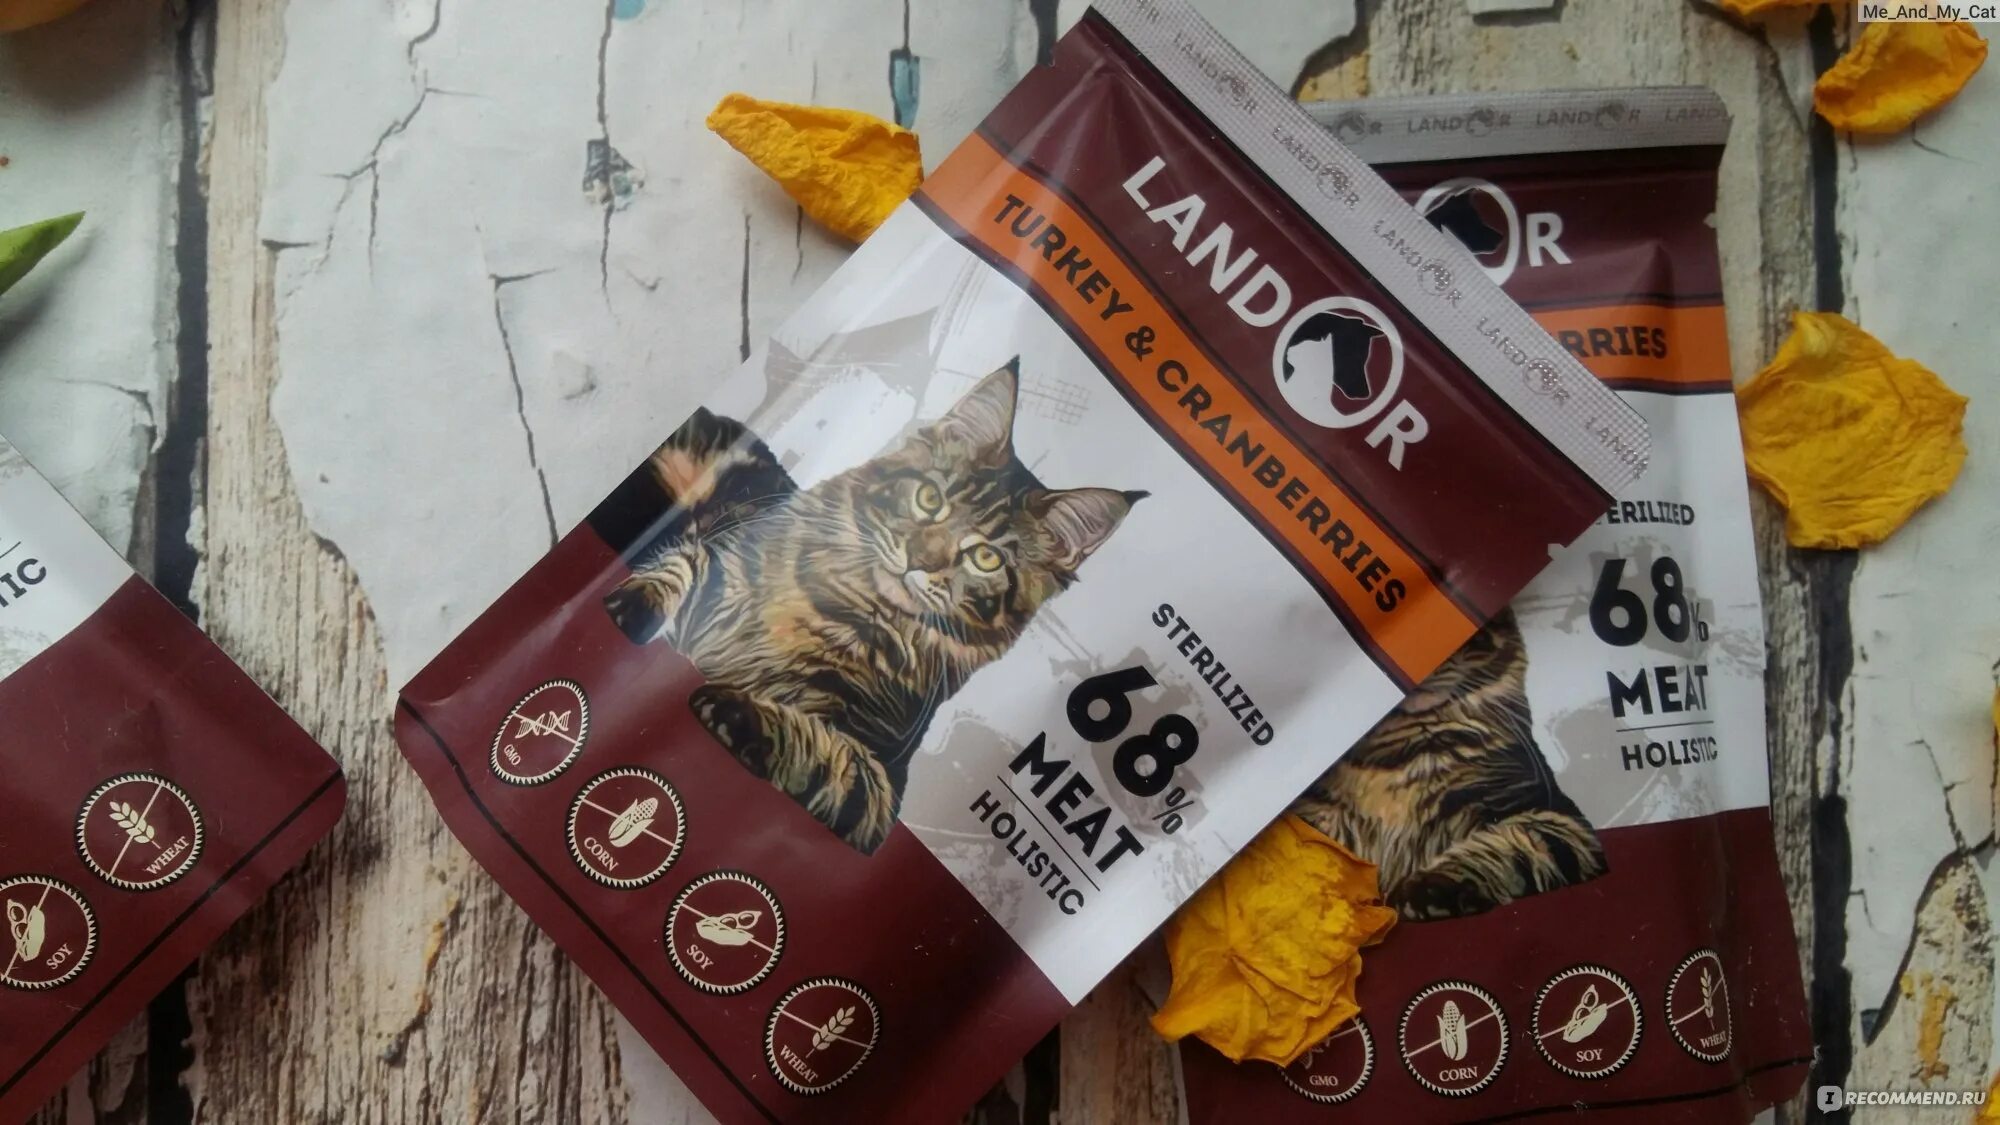 Landor корм для кошек пауч. Ландор влажный корм для кошек. Ландор для котят влажный корм. Корм Landor для кошек жидкий.